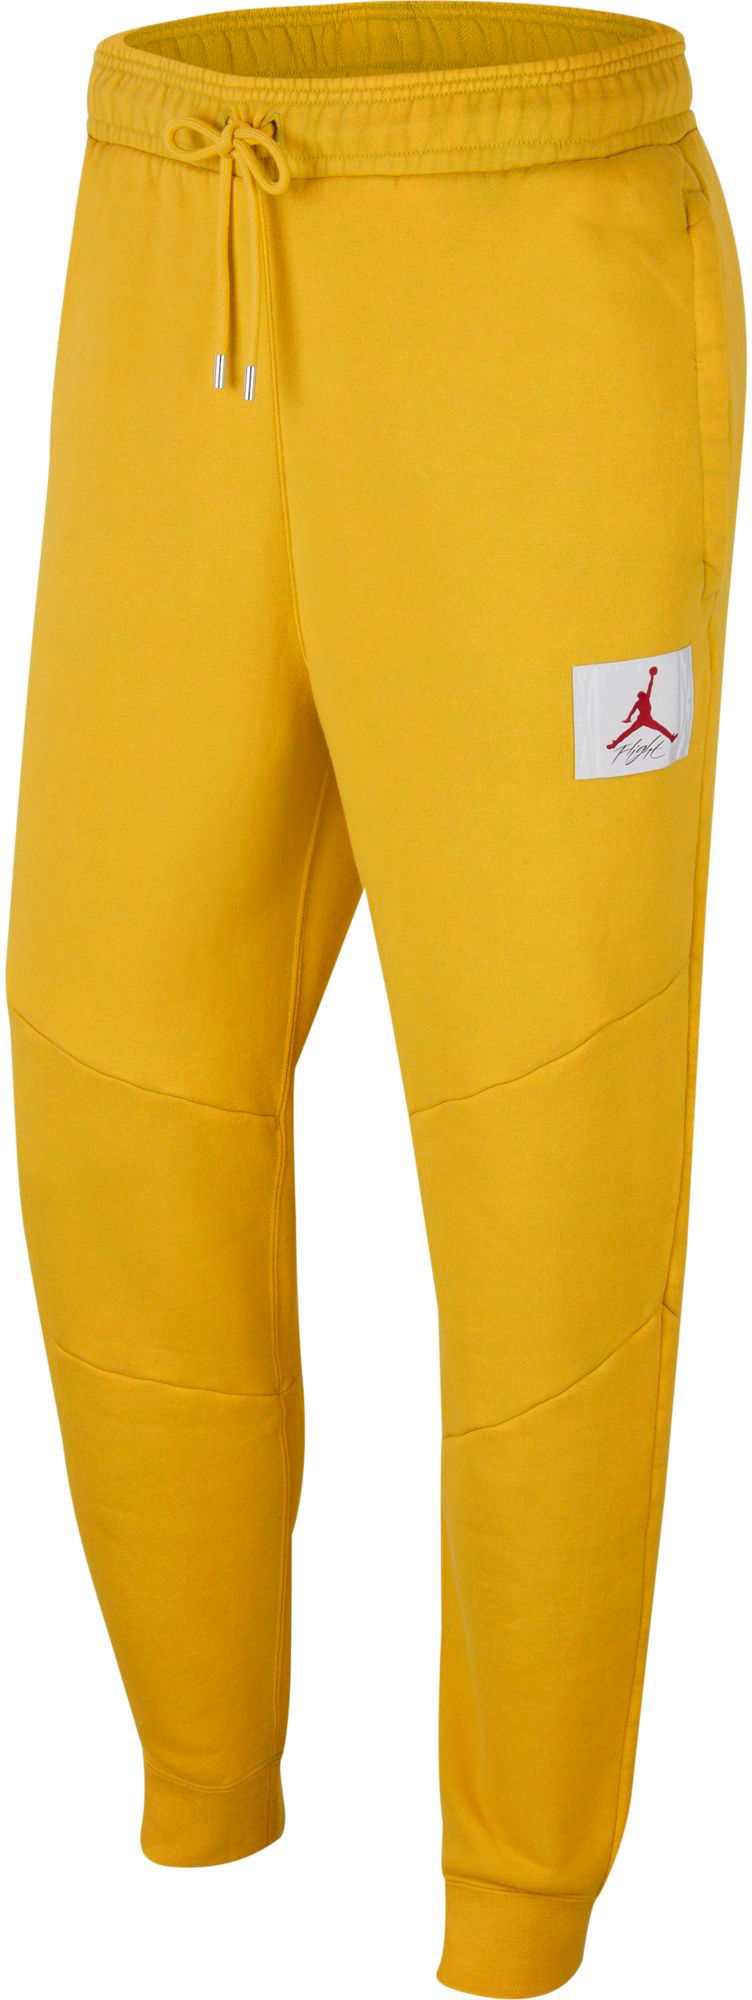 yellow jordan sweatpants